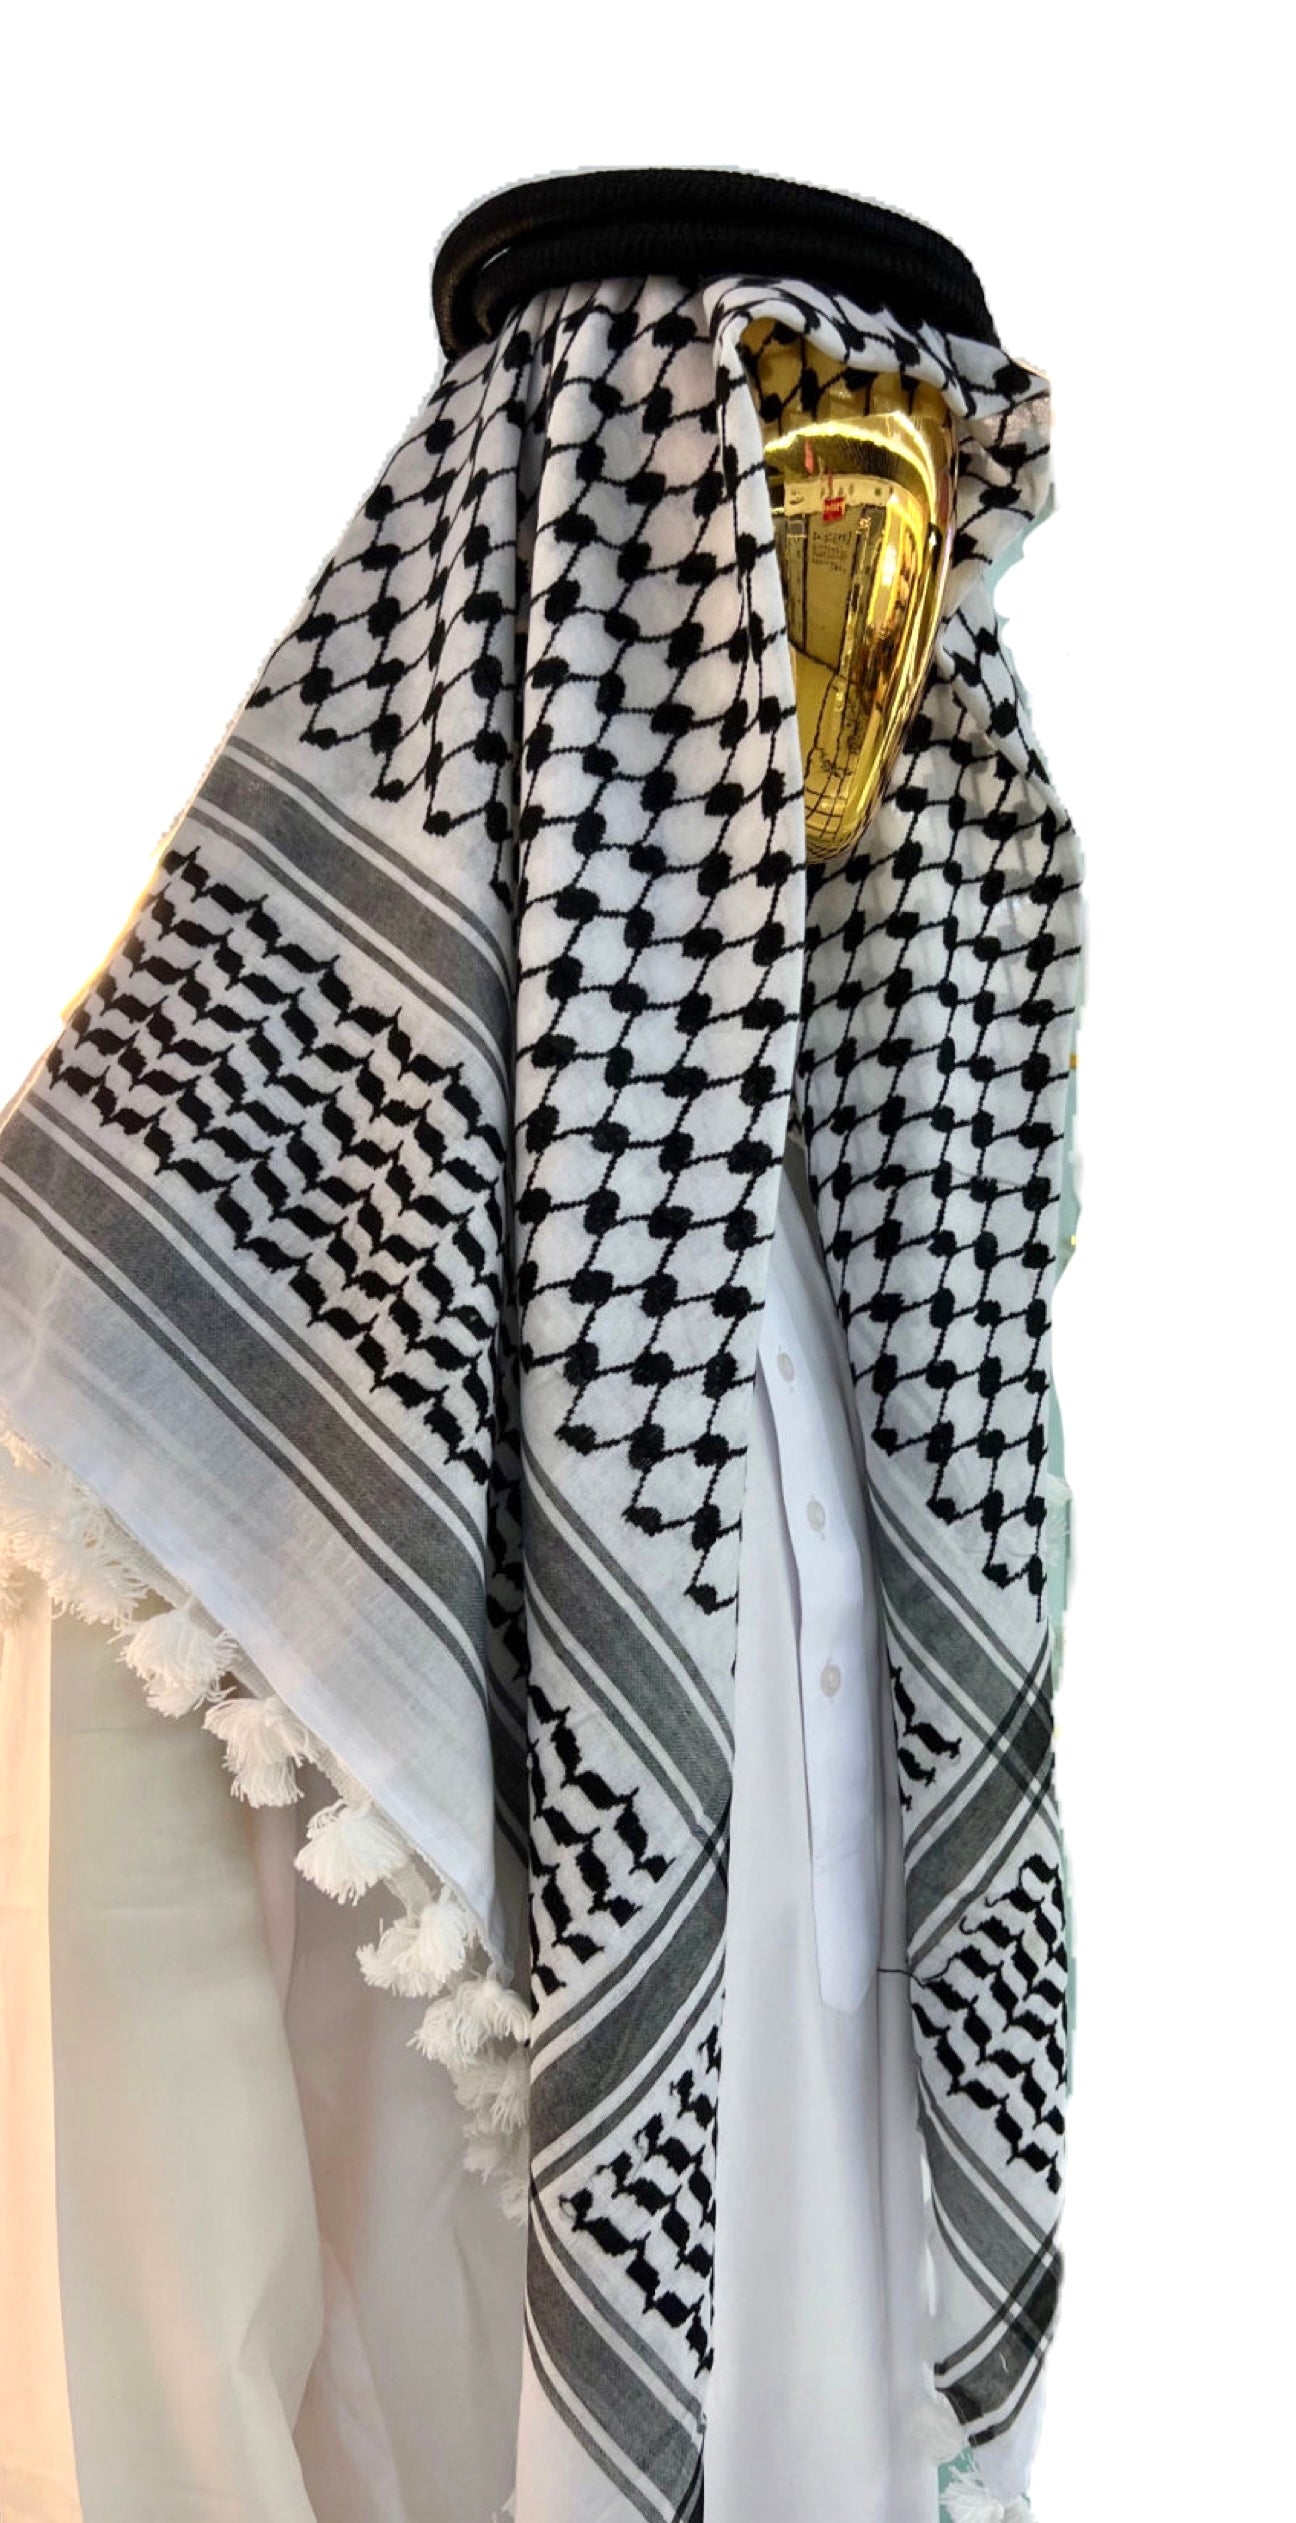 Kufiya/Keffiyeh mit weißer Flosse Schwarz-Weiß 127x127 cm + Palästina-Flagge 90x150 cm Kombiangebot